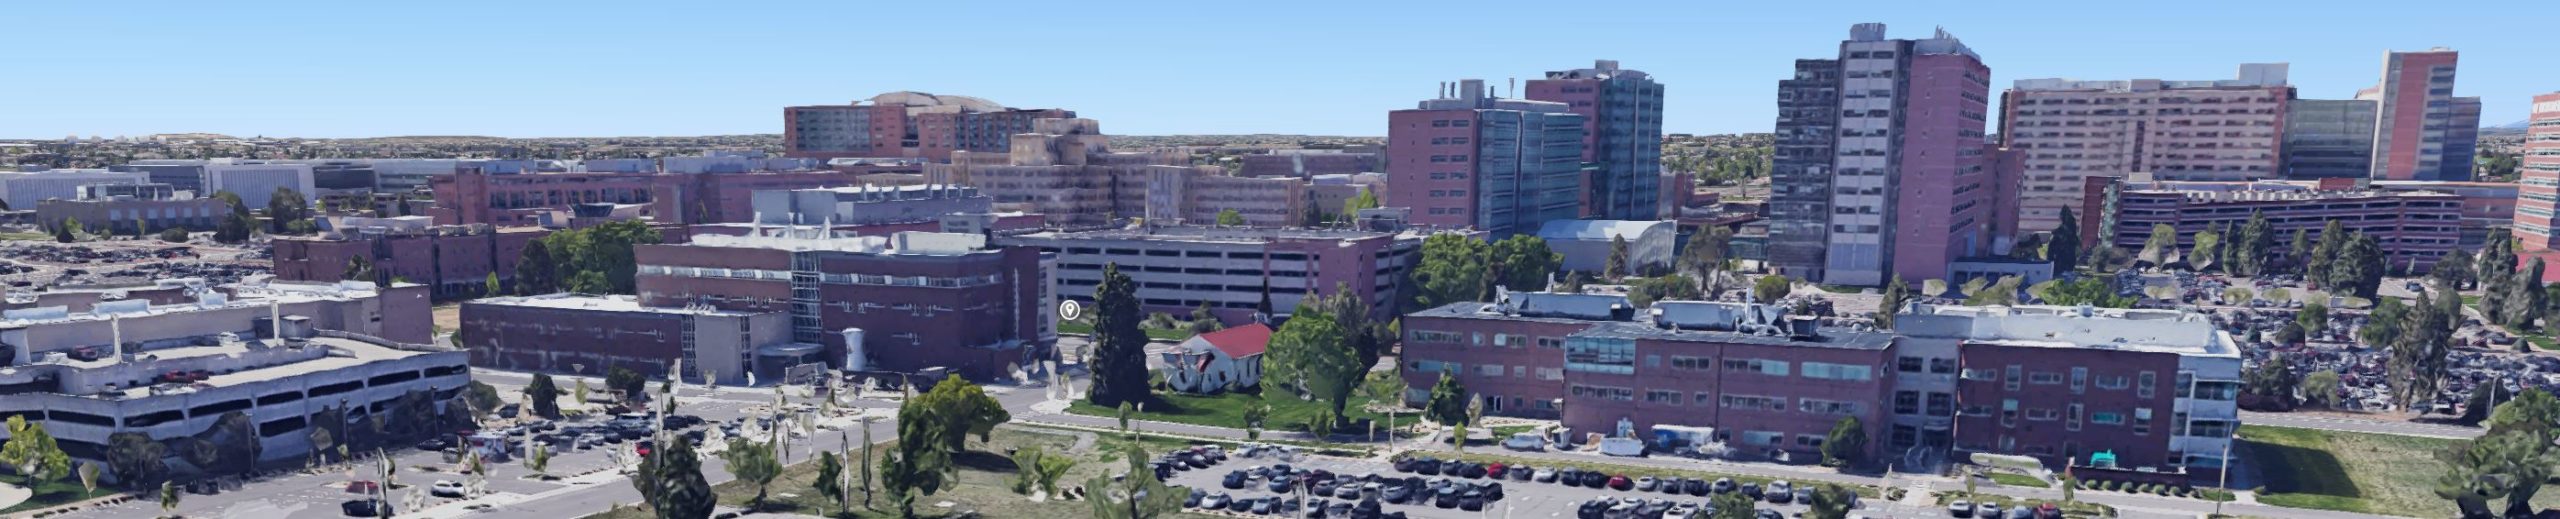 InVitria at Anschutz Medical Campus in Denver